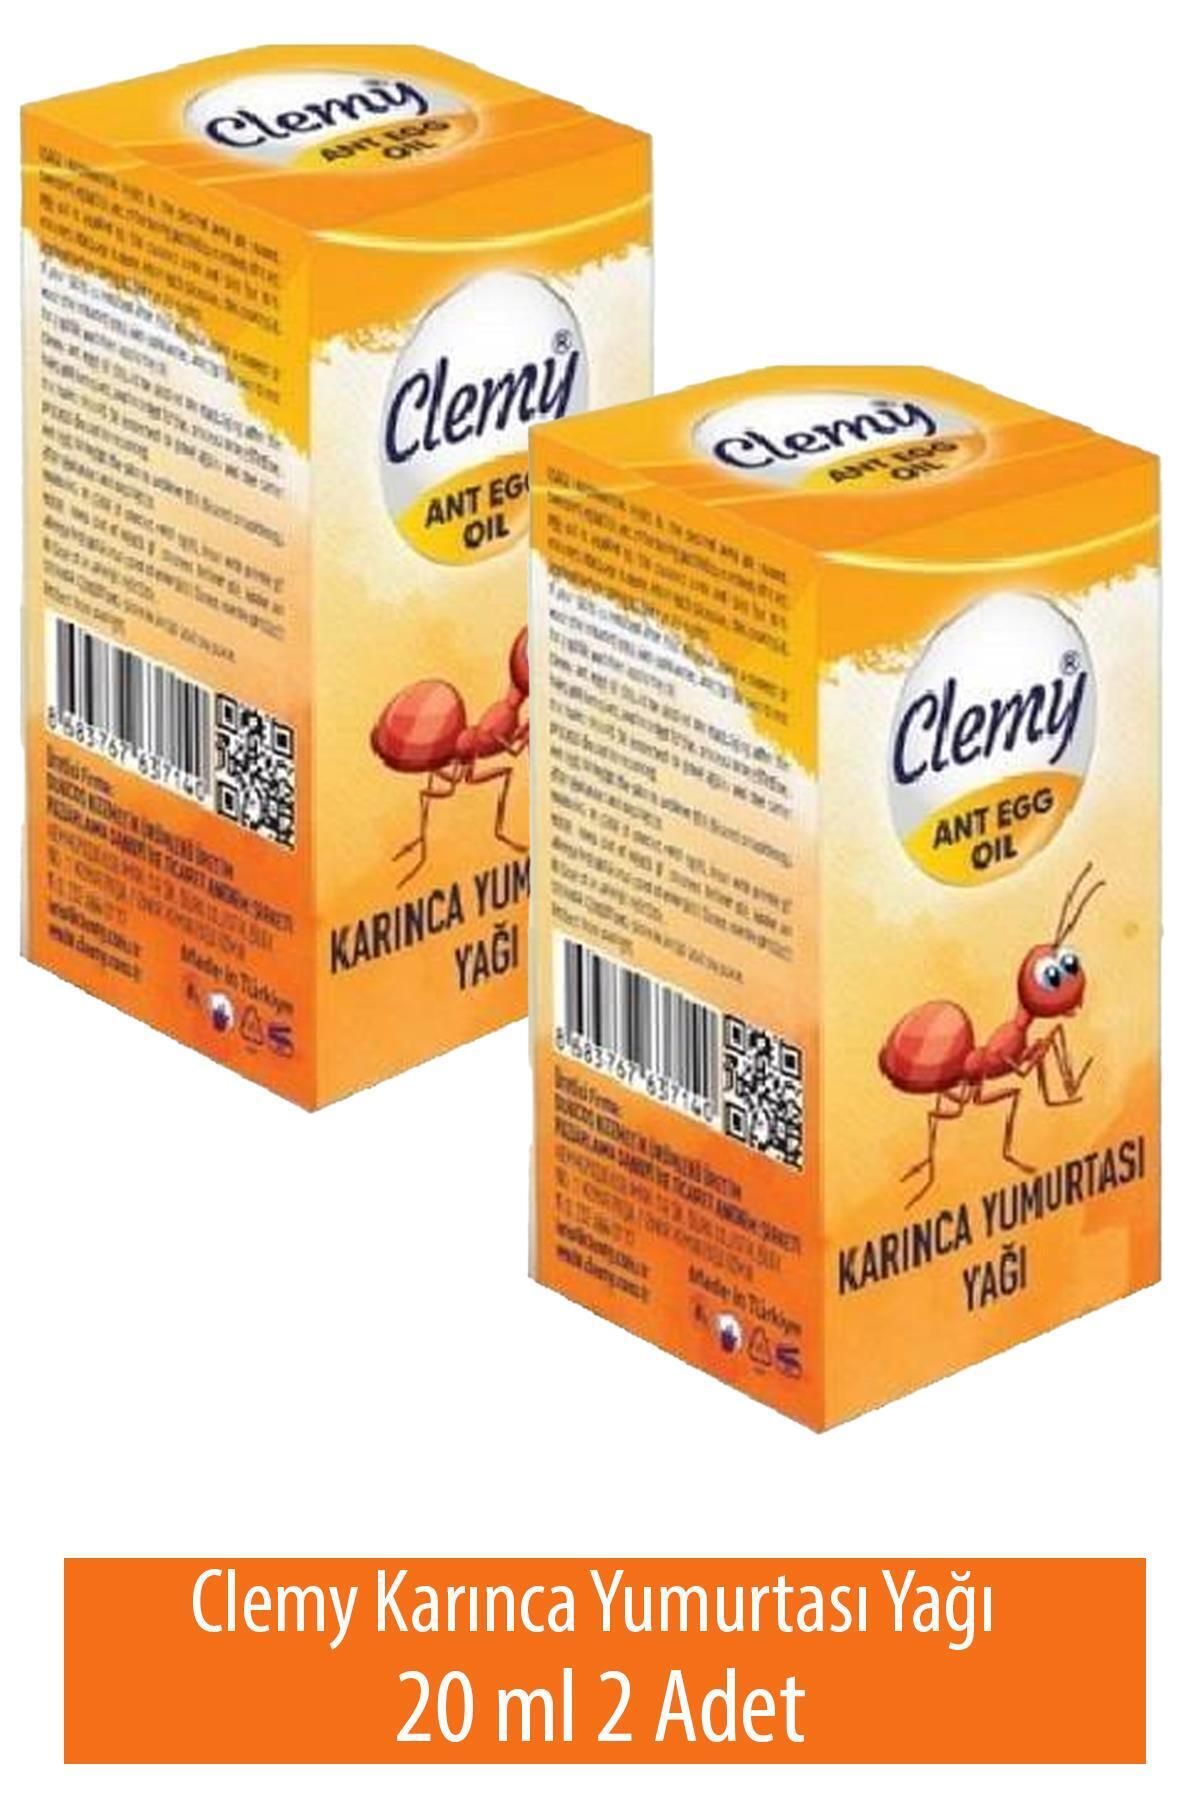 Clemly Clemy Karınca Yumurtası Yağı 20 ml 2 Adet